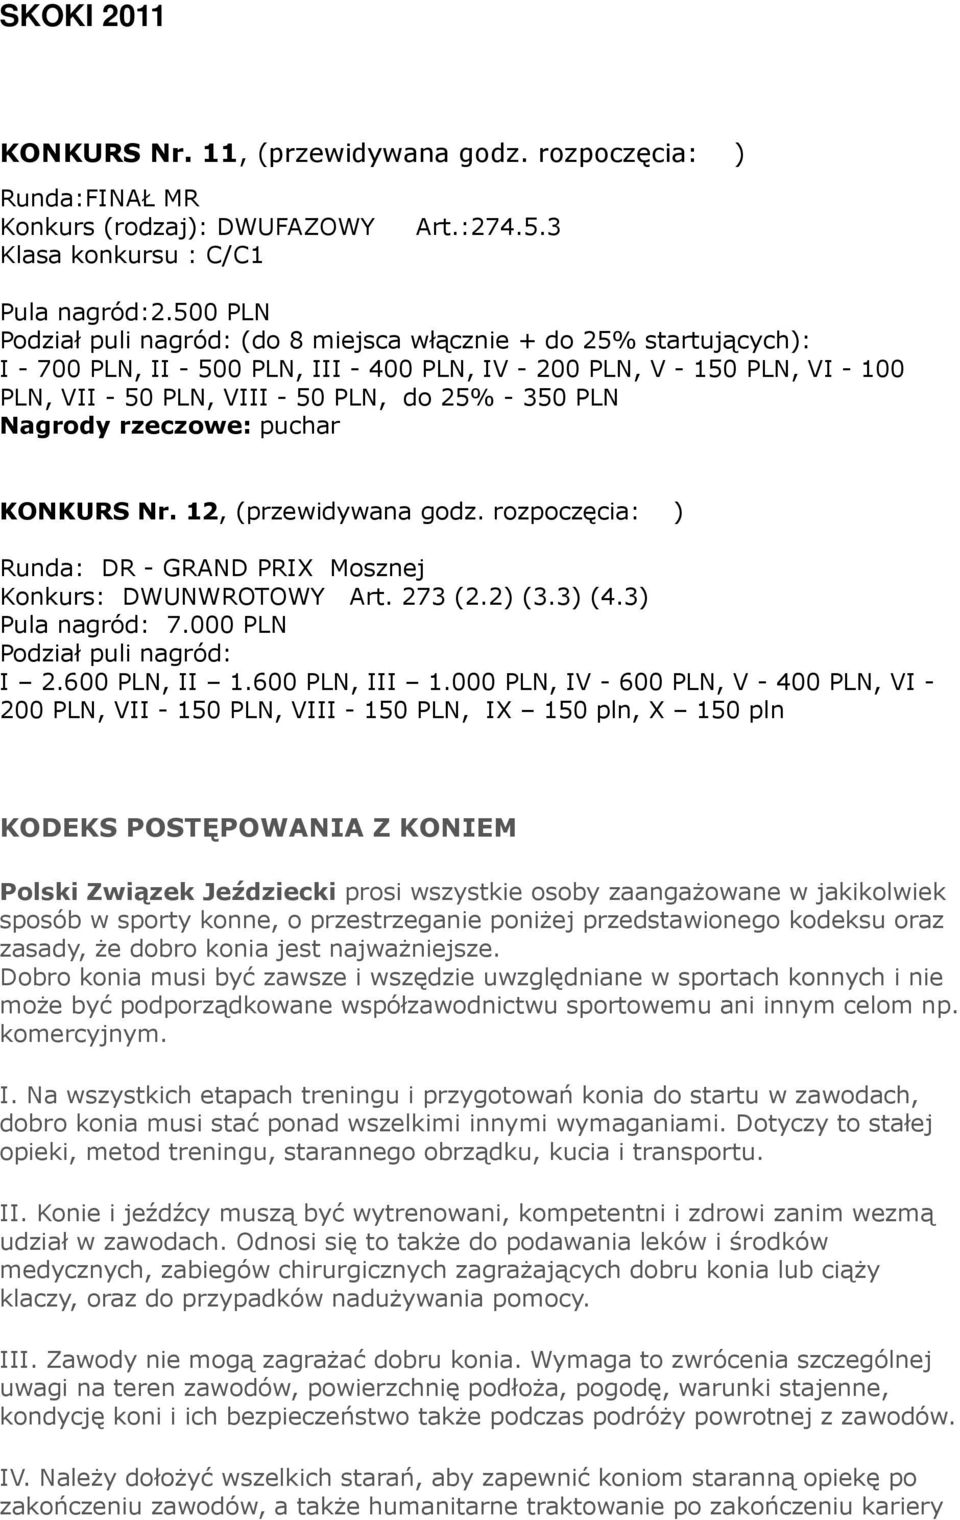 350 PLN Nagrody rzeczowe: puchar KONKURS Nr. 12, (przewidywana godz. rozpoczęcia: ) Runda: DR - GRAND PRIX Mosznej Konkurs: DWUNWROTOWY Art. 273 (2.2) (3.3) (4.3) Pula nagród: 7.